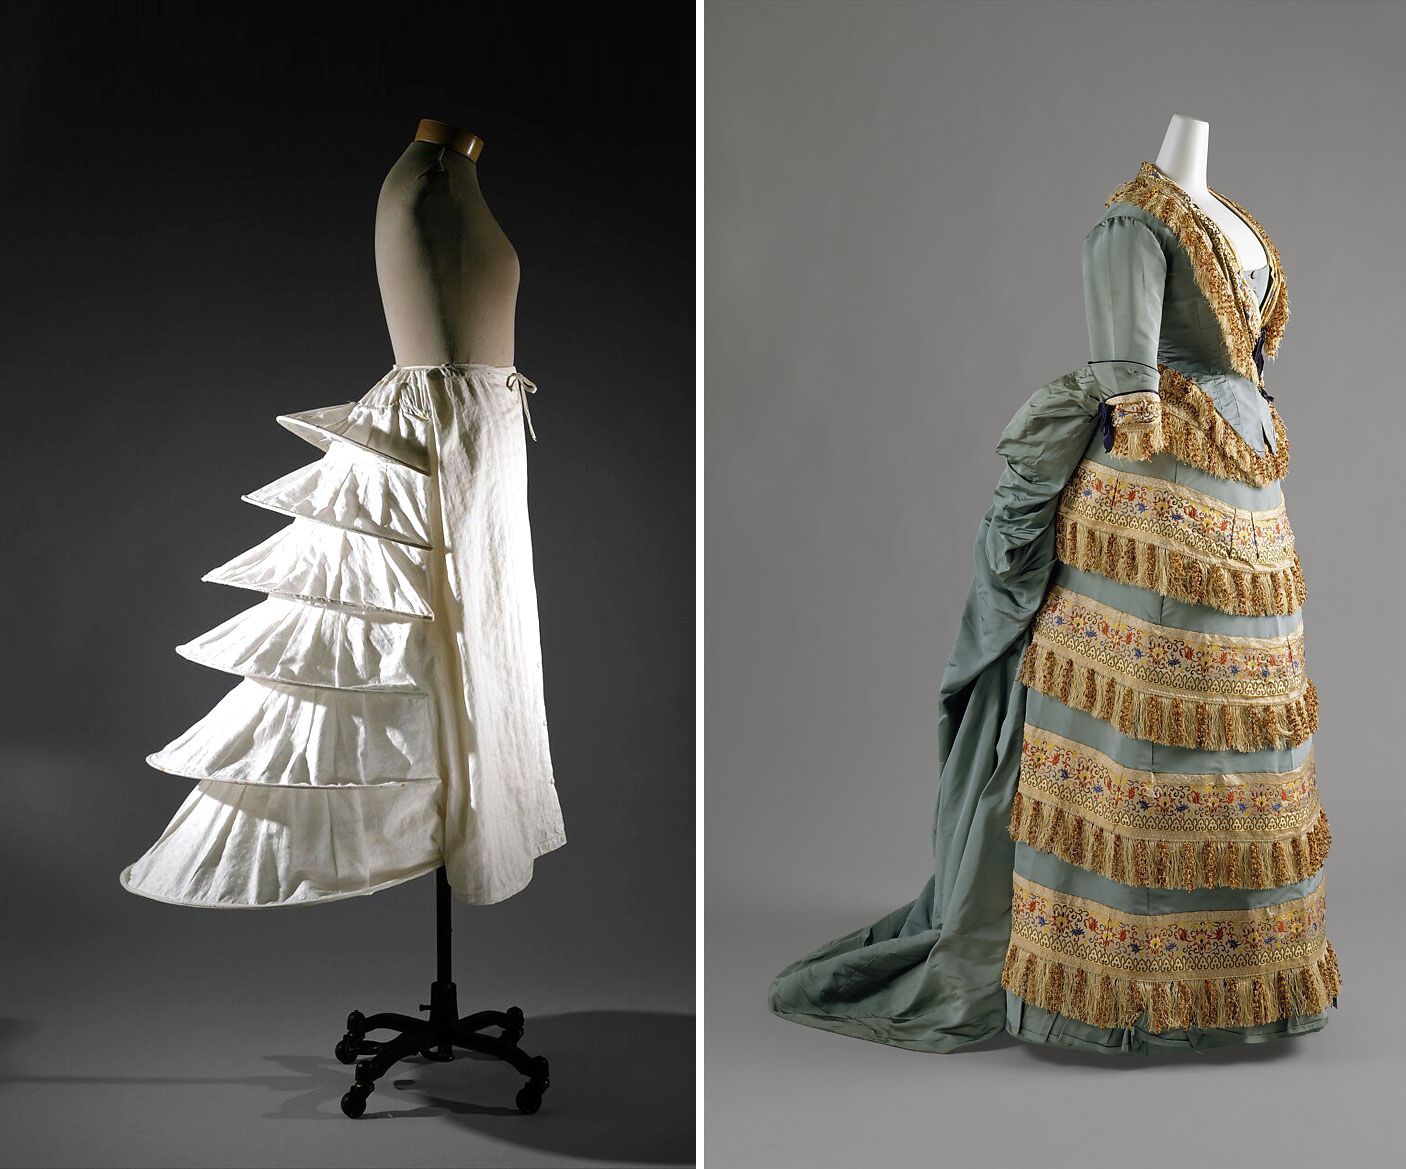 Trái: Tùng váy lót tạo phom dáng đuôi cá. Phải: Đầm của nhà thiết kế haute couture Charles Worth. Cả hai thiết kế có niên đại 1870. Ảnh: Bảo tàng The Met New York